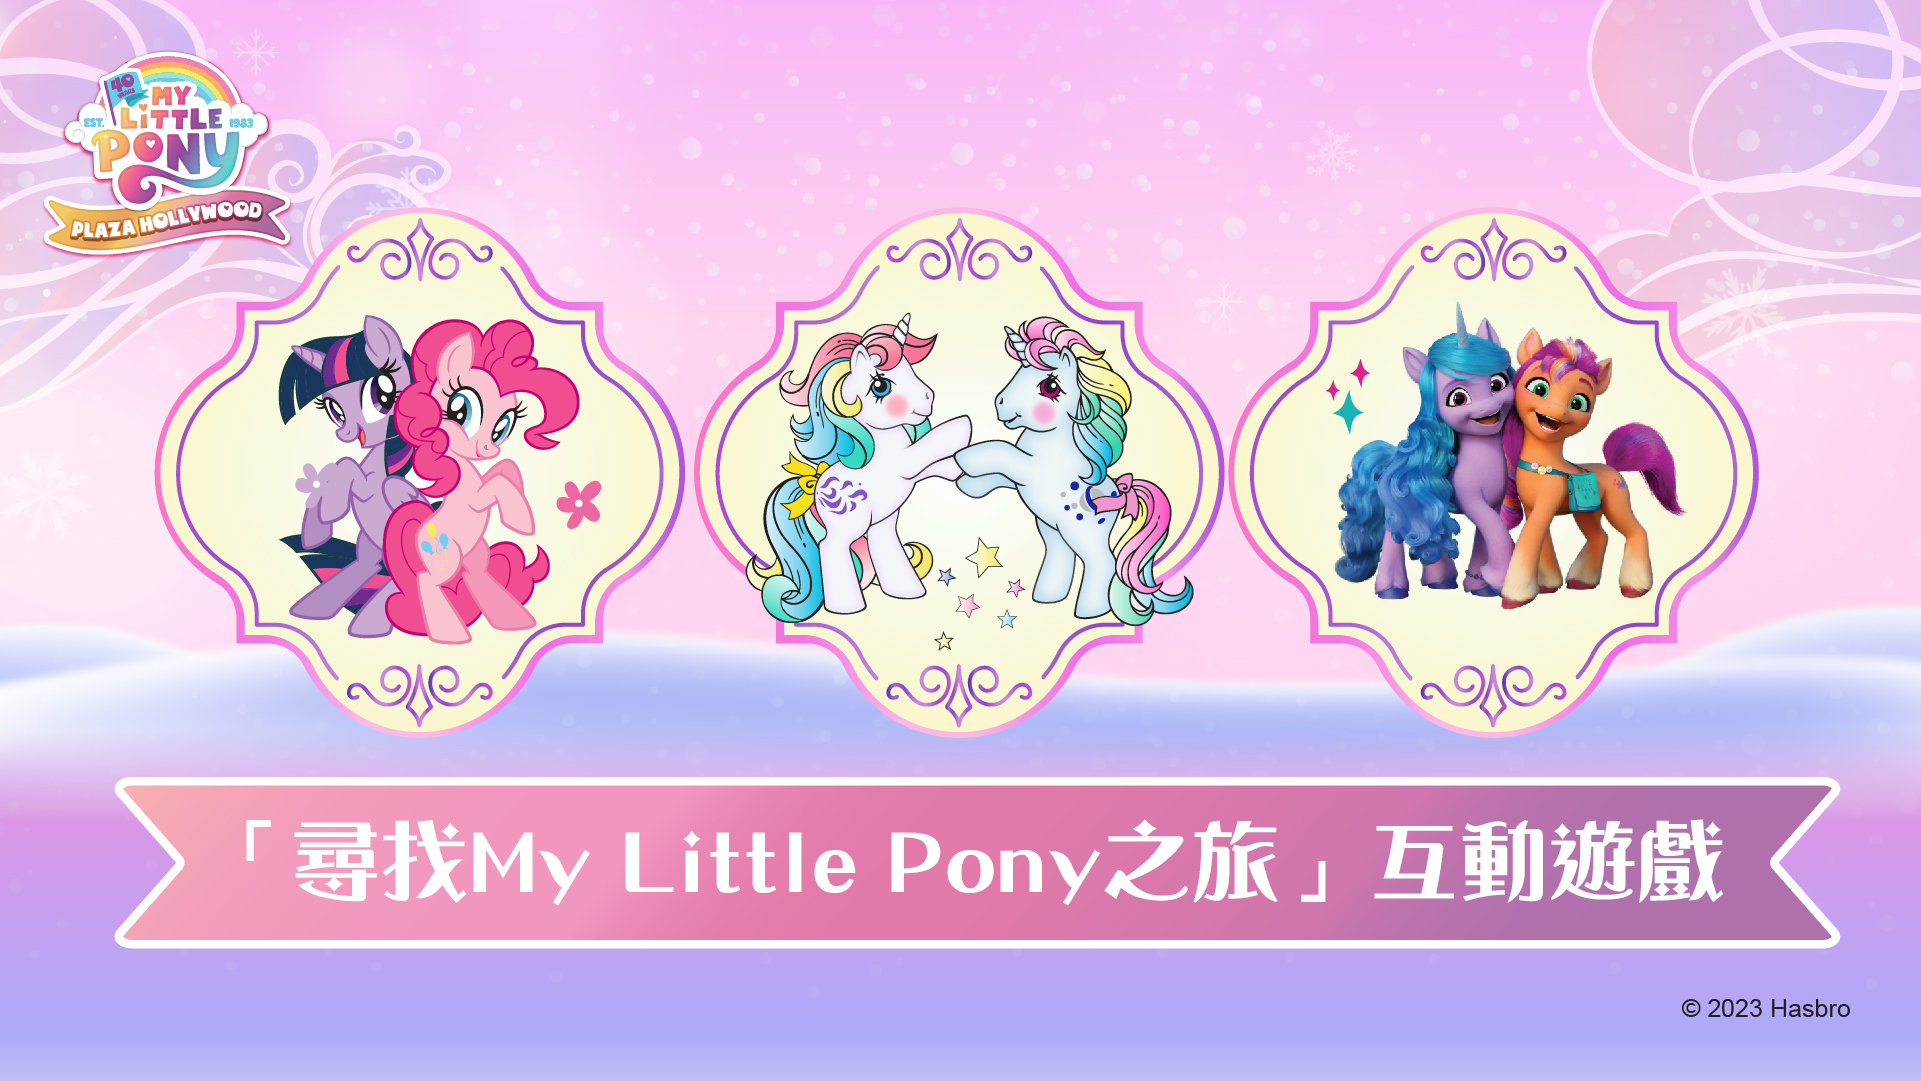 「尋找My Little Pony之旅」互動遊戲